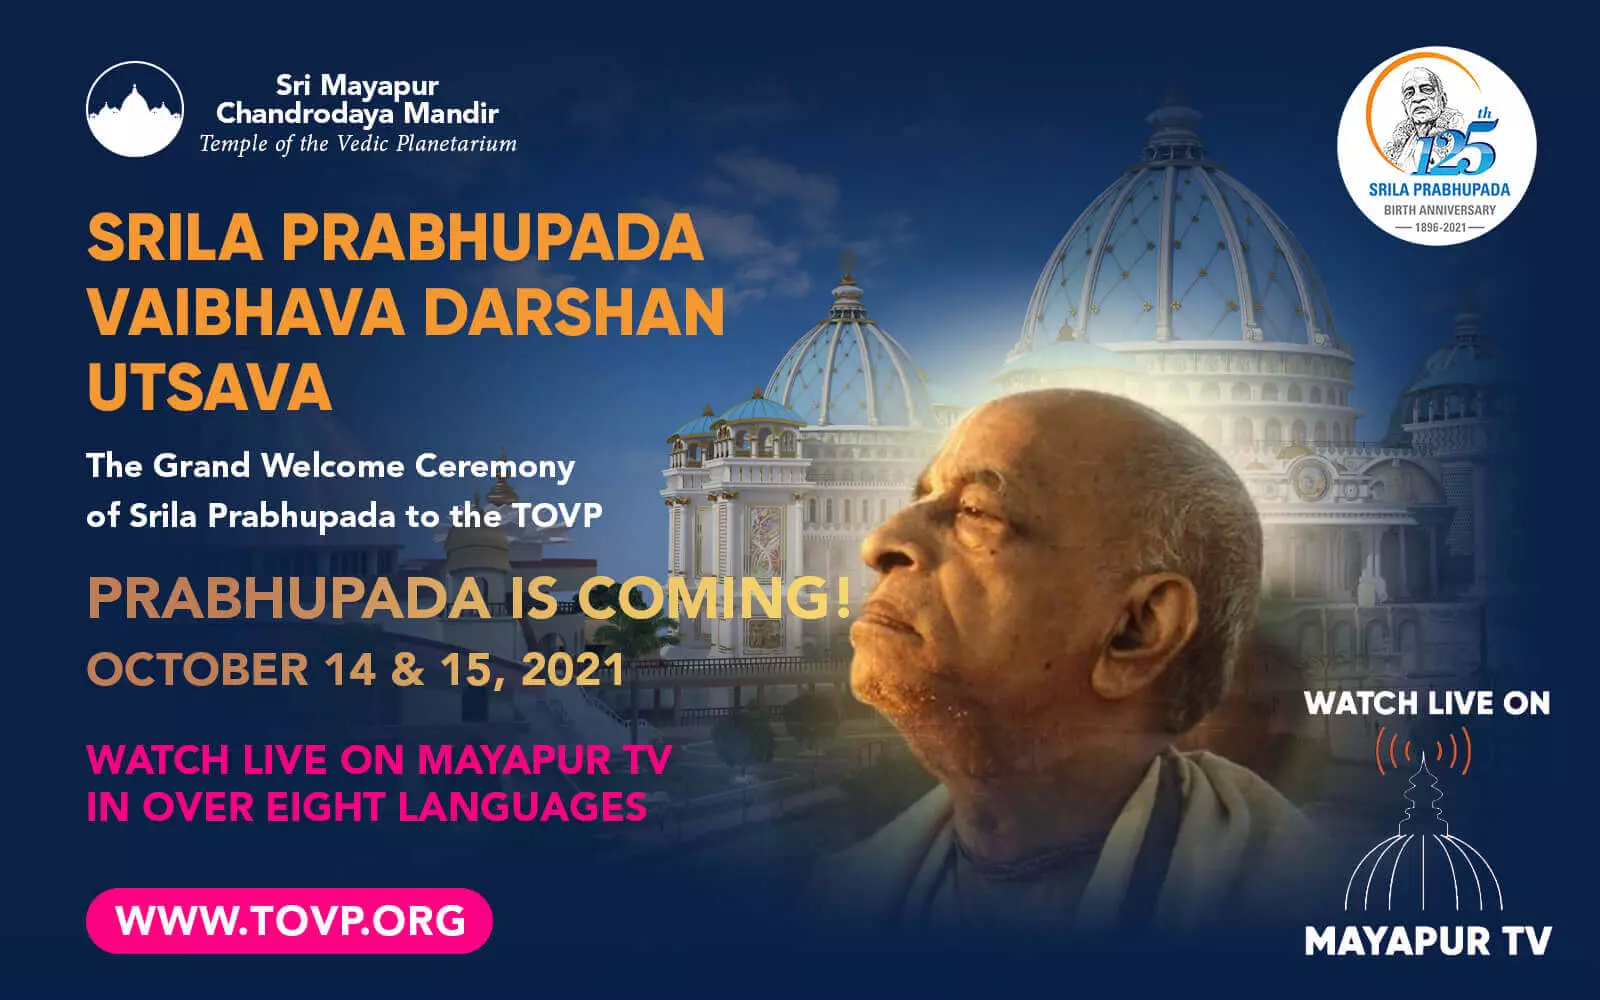 PRABHUPADA KOMMT ZUM TOVP! Sehen Sie Live auf Mayapur TV, 14. und 15. Oktober